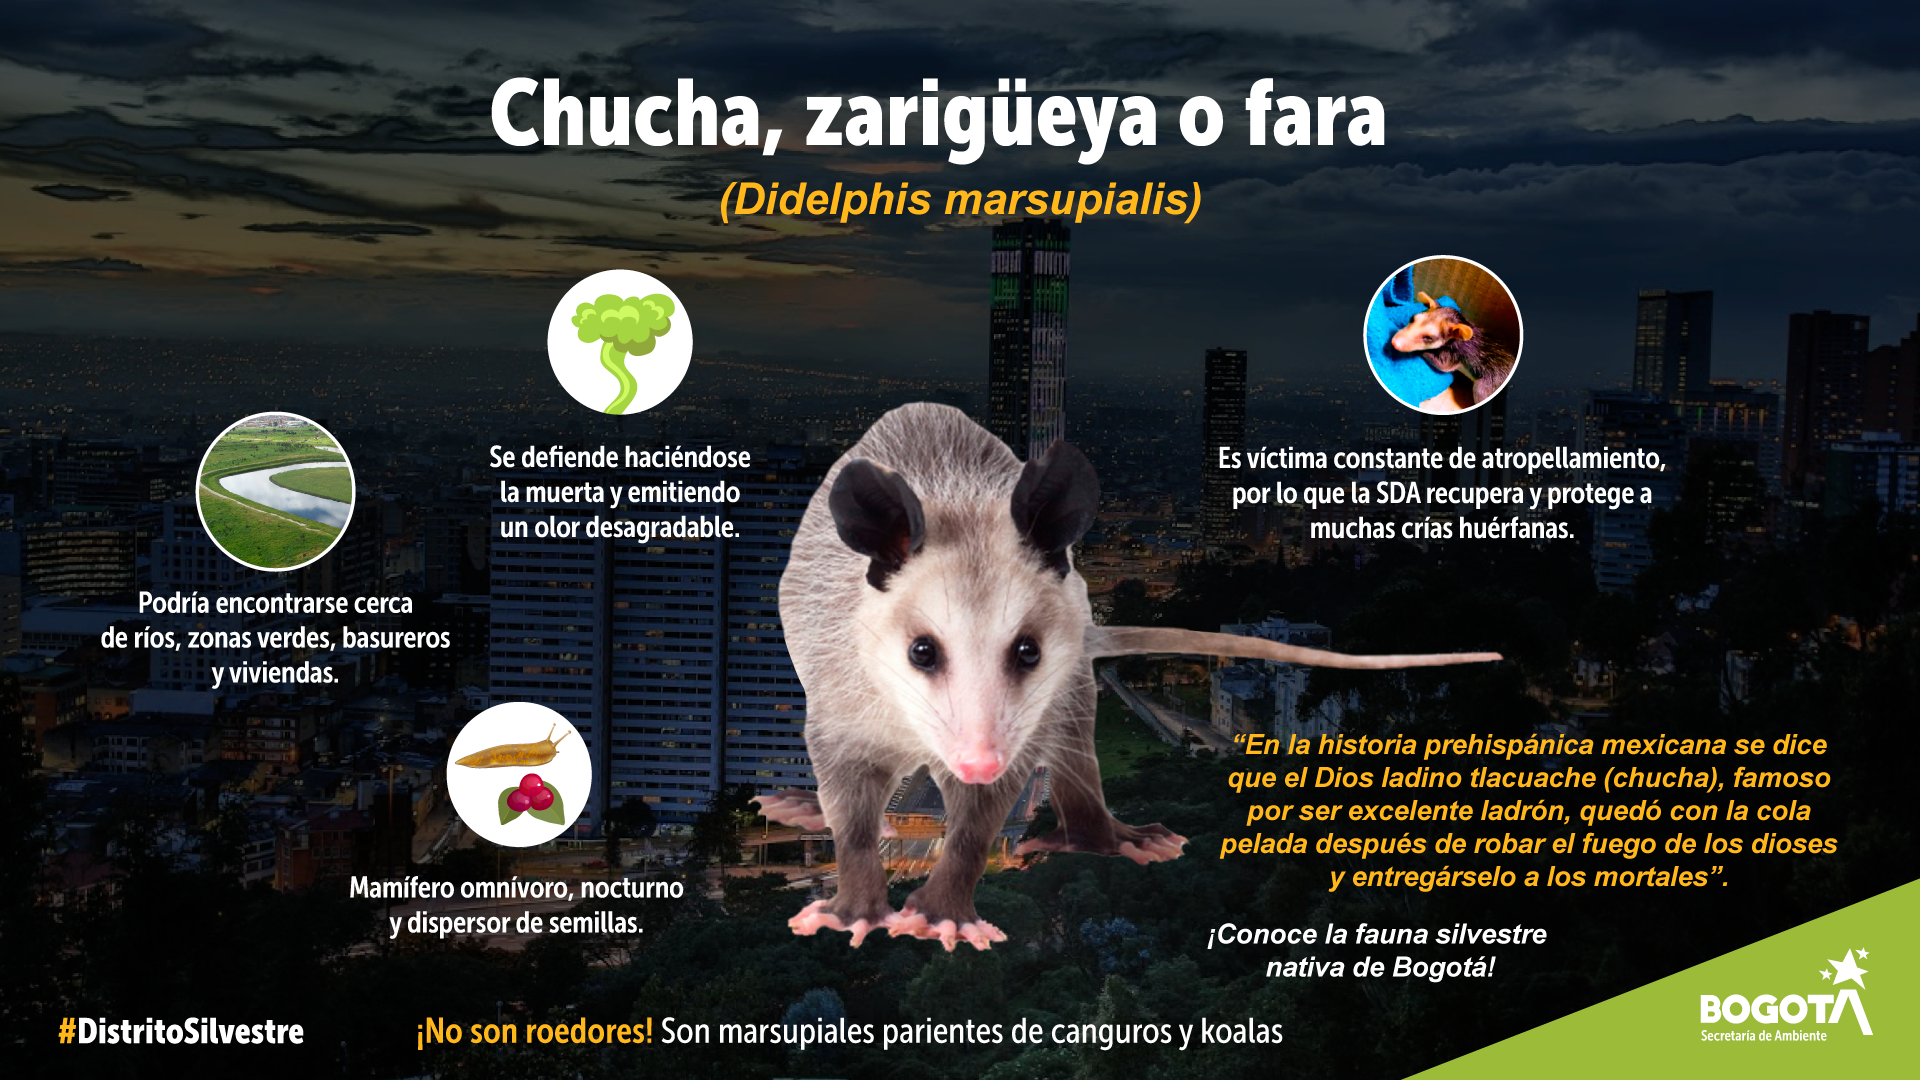 Bogotá protege y conserva la Zarigueya